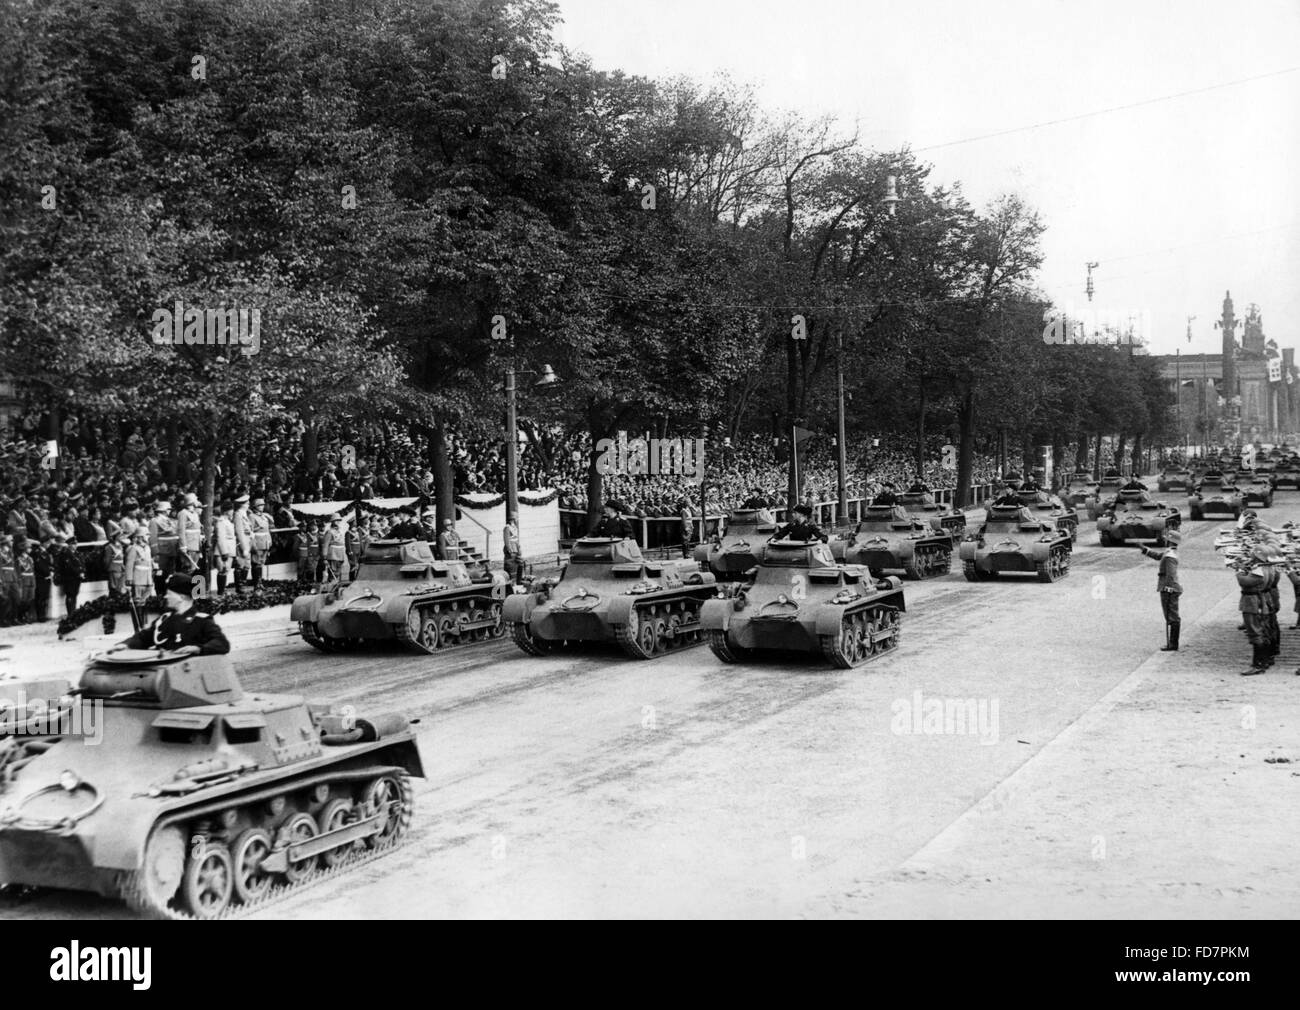 Panzerkampfwagen I during a parade, 1937 Stock Photo